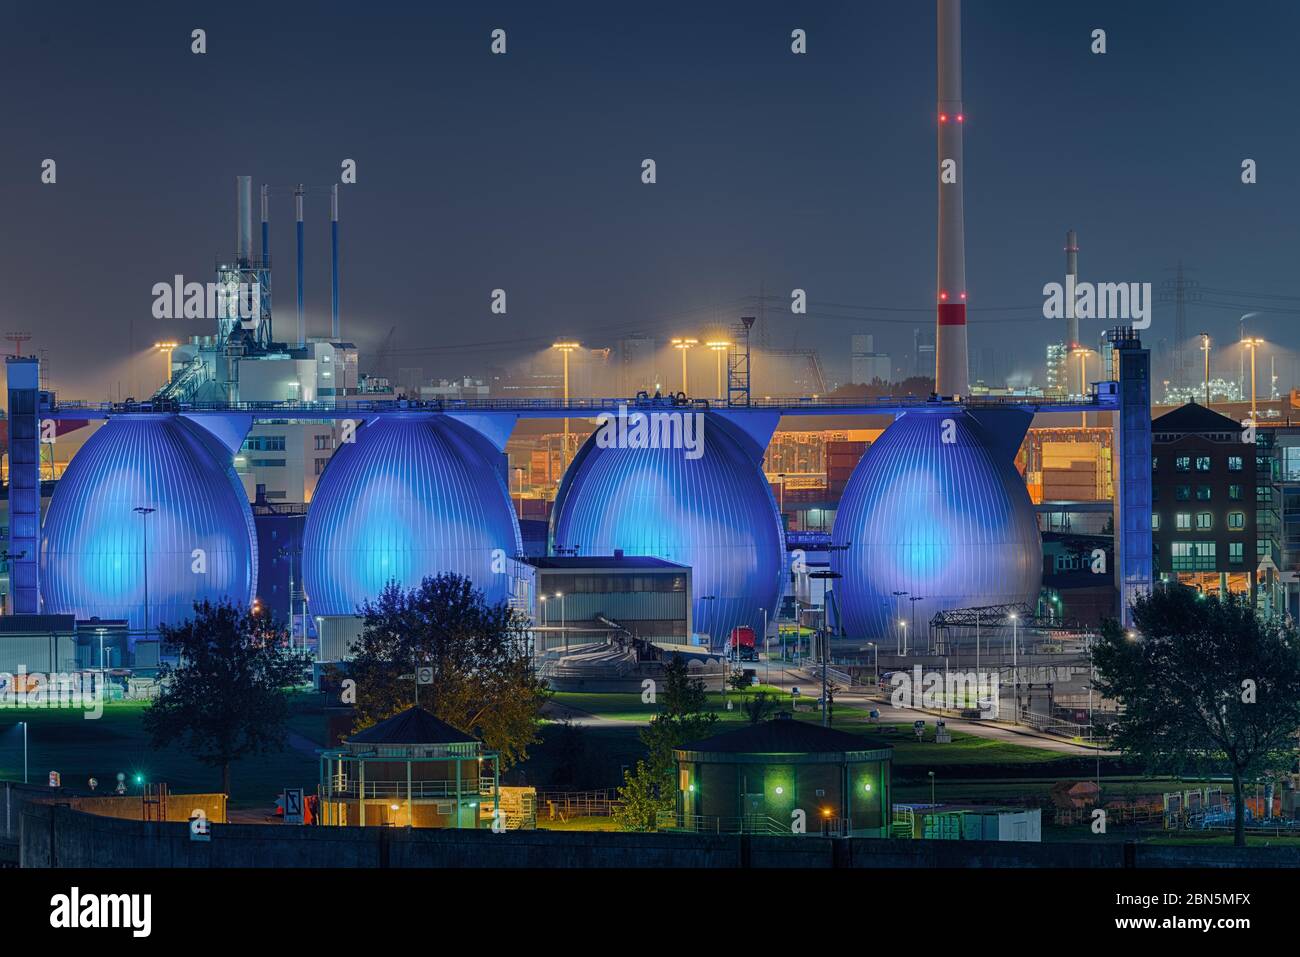 Futtermittelhersteller Supermast, beleuchtete Silos auf der Elbe, Nachtaufnahme, Hamburger Hafen, Hamburg, Deutschland Stockfoto